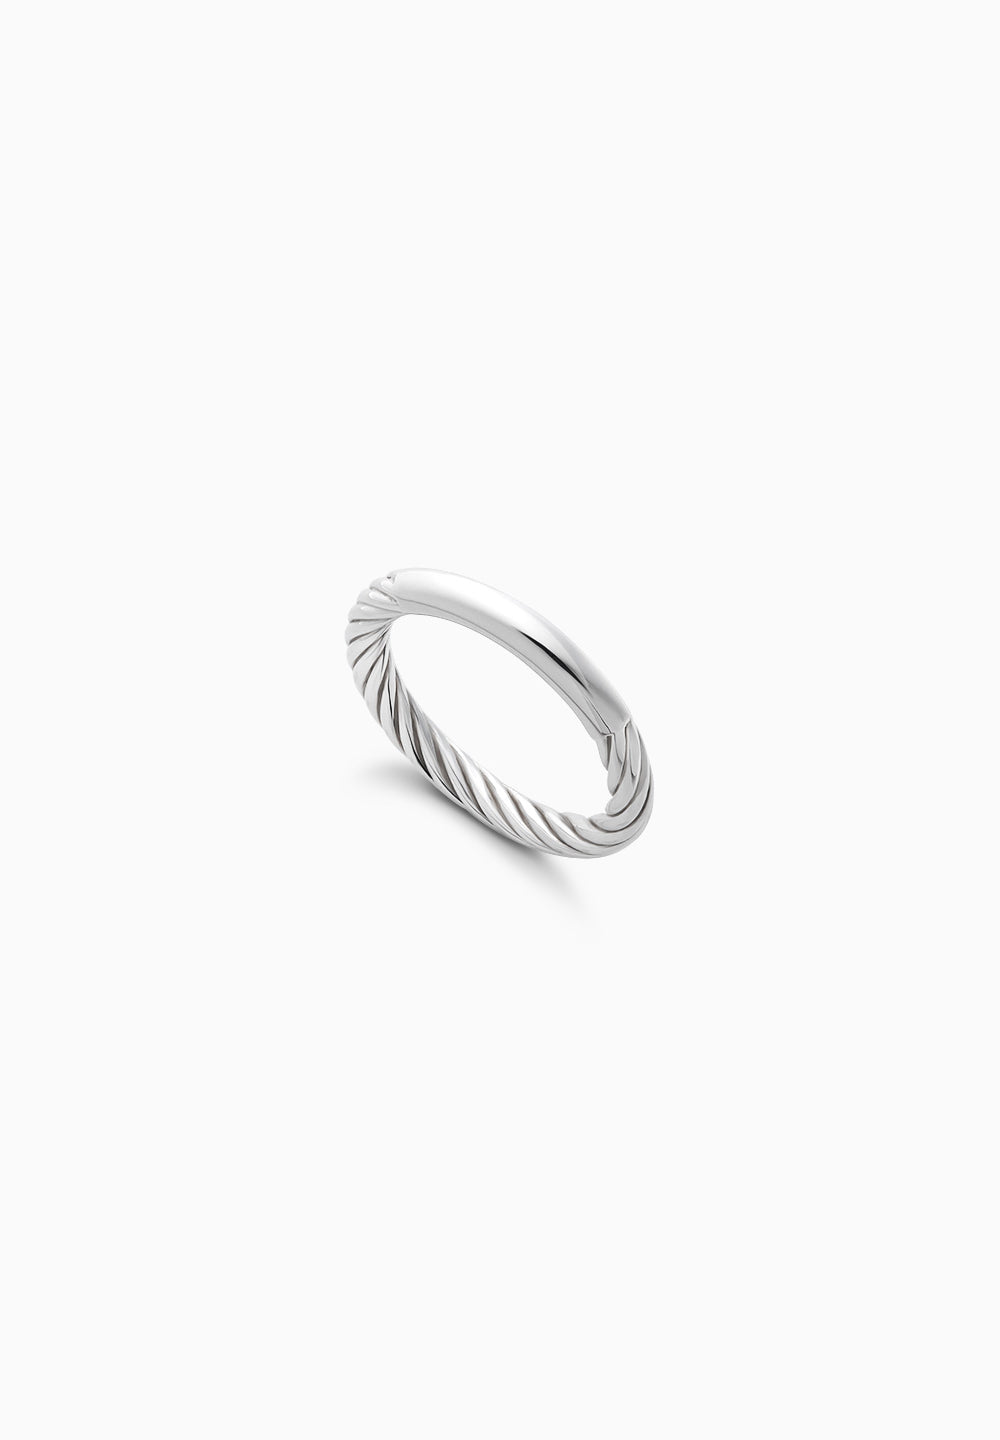 卡拉瓦乔|卡拉瓦乔|戒指|纯银|φ3.0mm